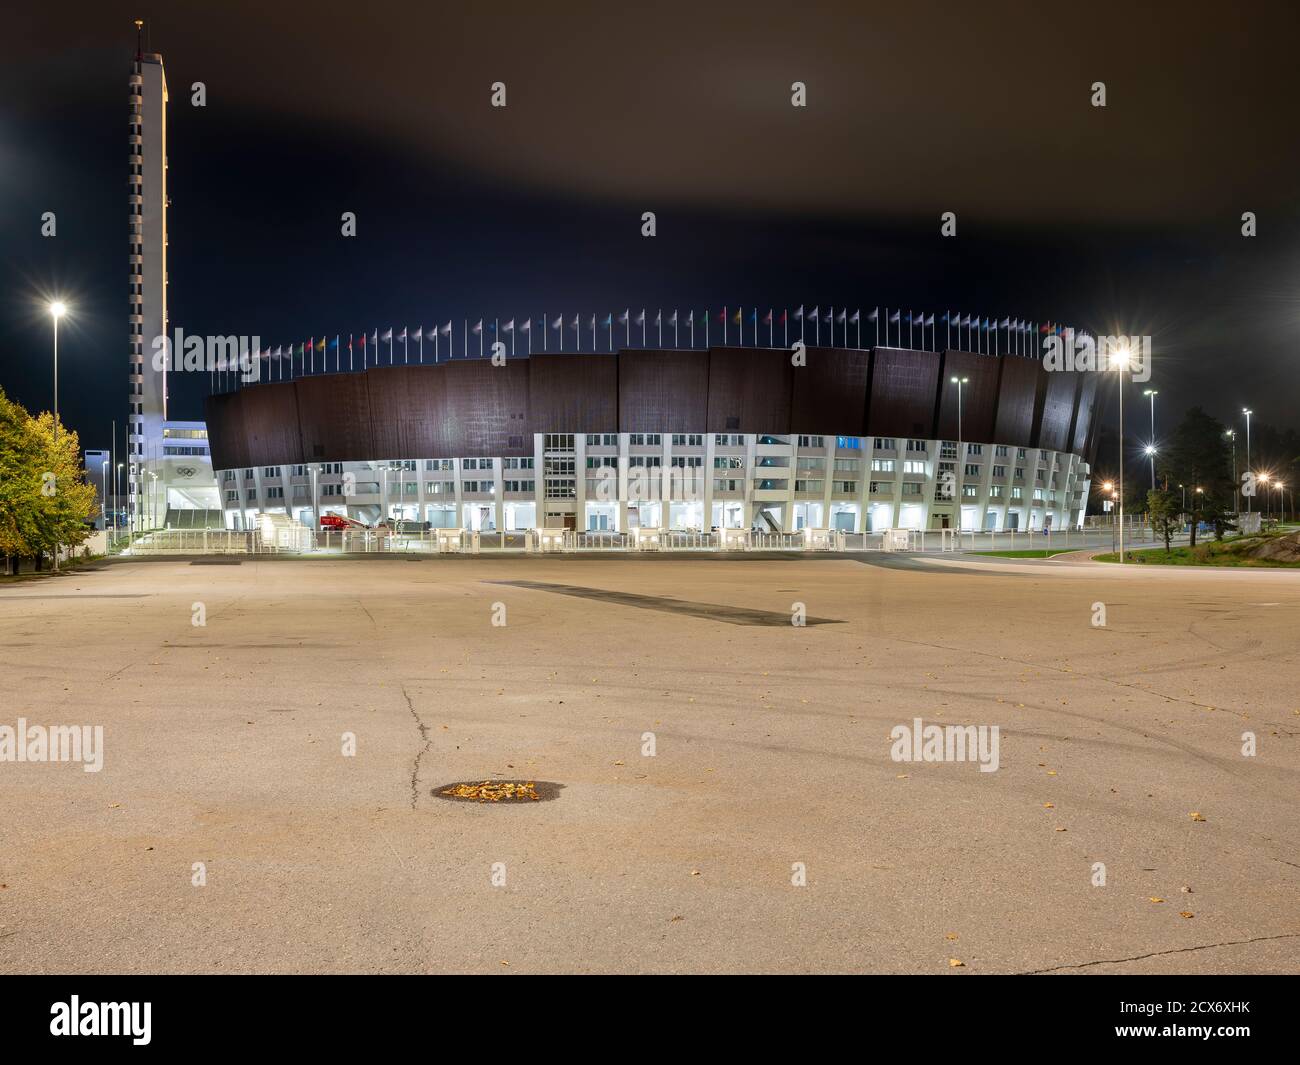 Helsinki/Finnland - 30. SEPTEMBER 2020: Die mehrjährige Renovierung des Olympiastadions, das 1938 für die Olympischen Spiele in Helsinki erbaut wurde, wurde abgeschlossen Stockfoto